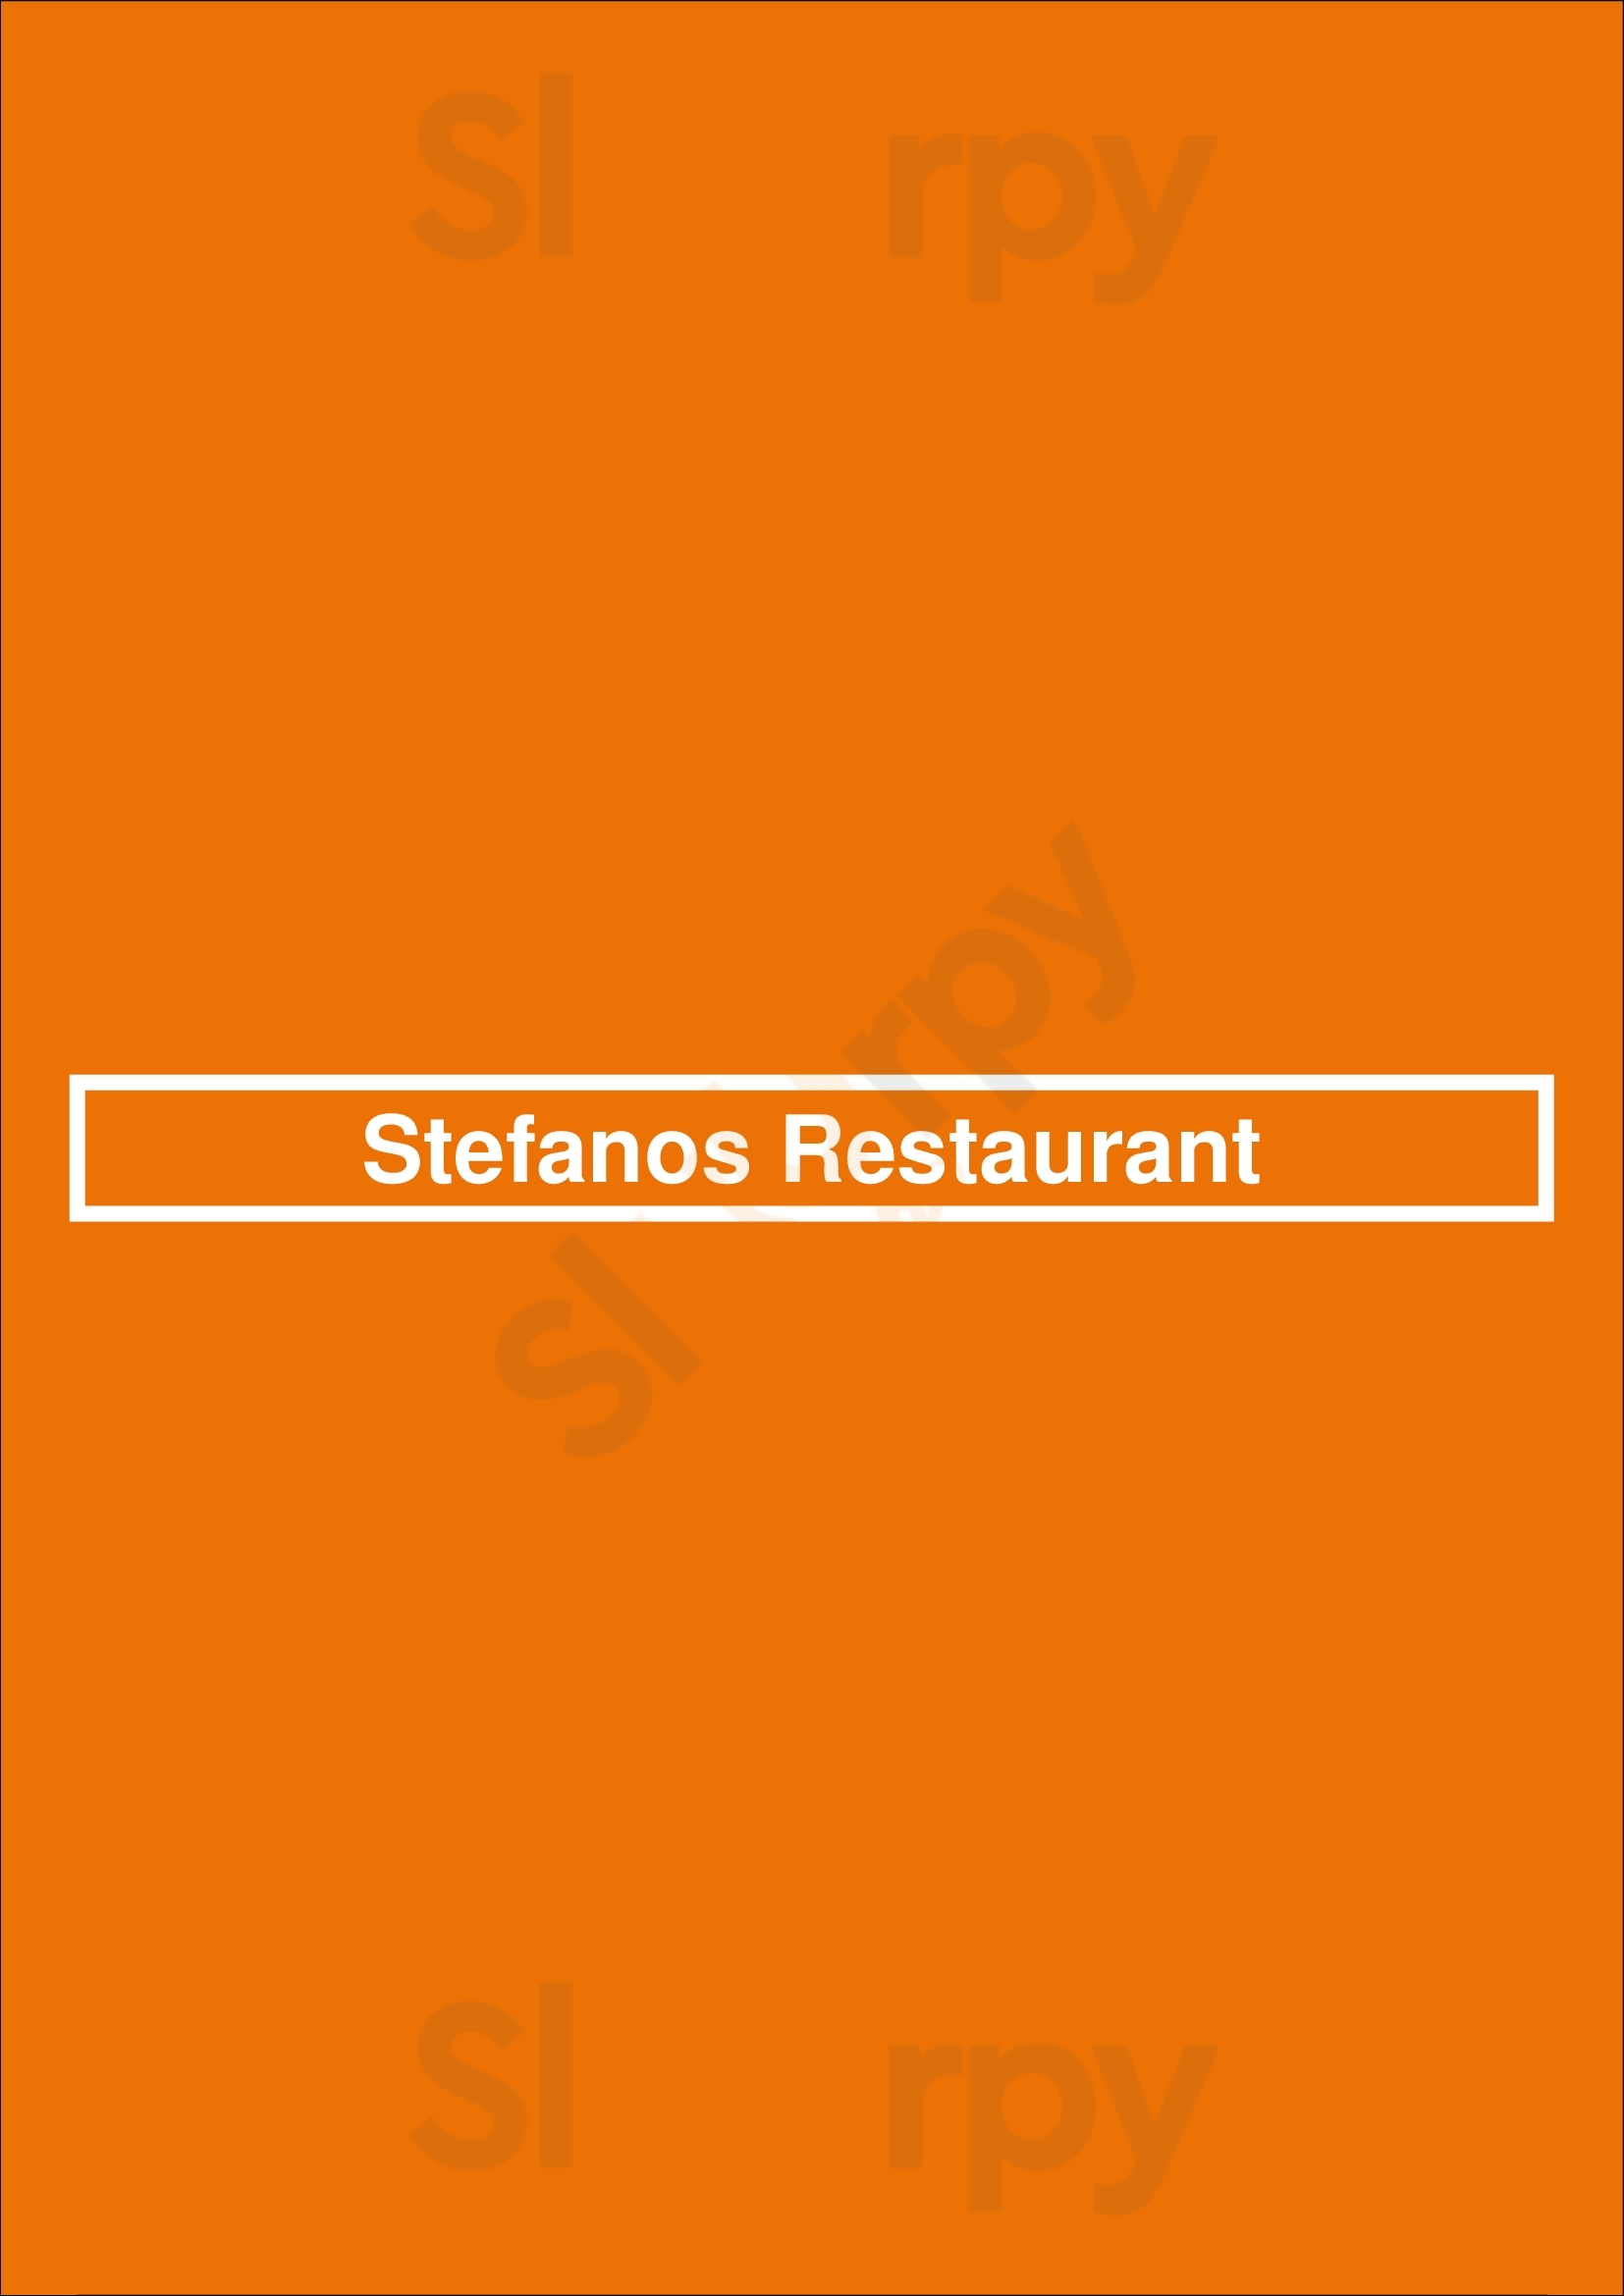 Stefanos Restaurant New Westminster Menu - 1